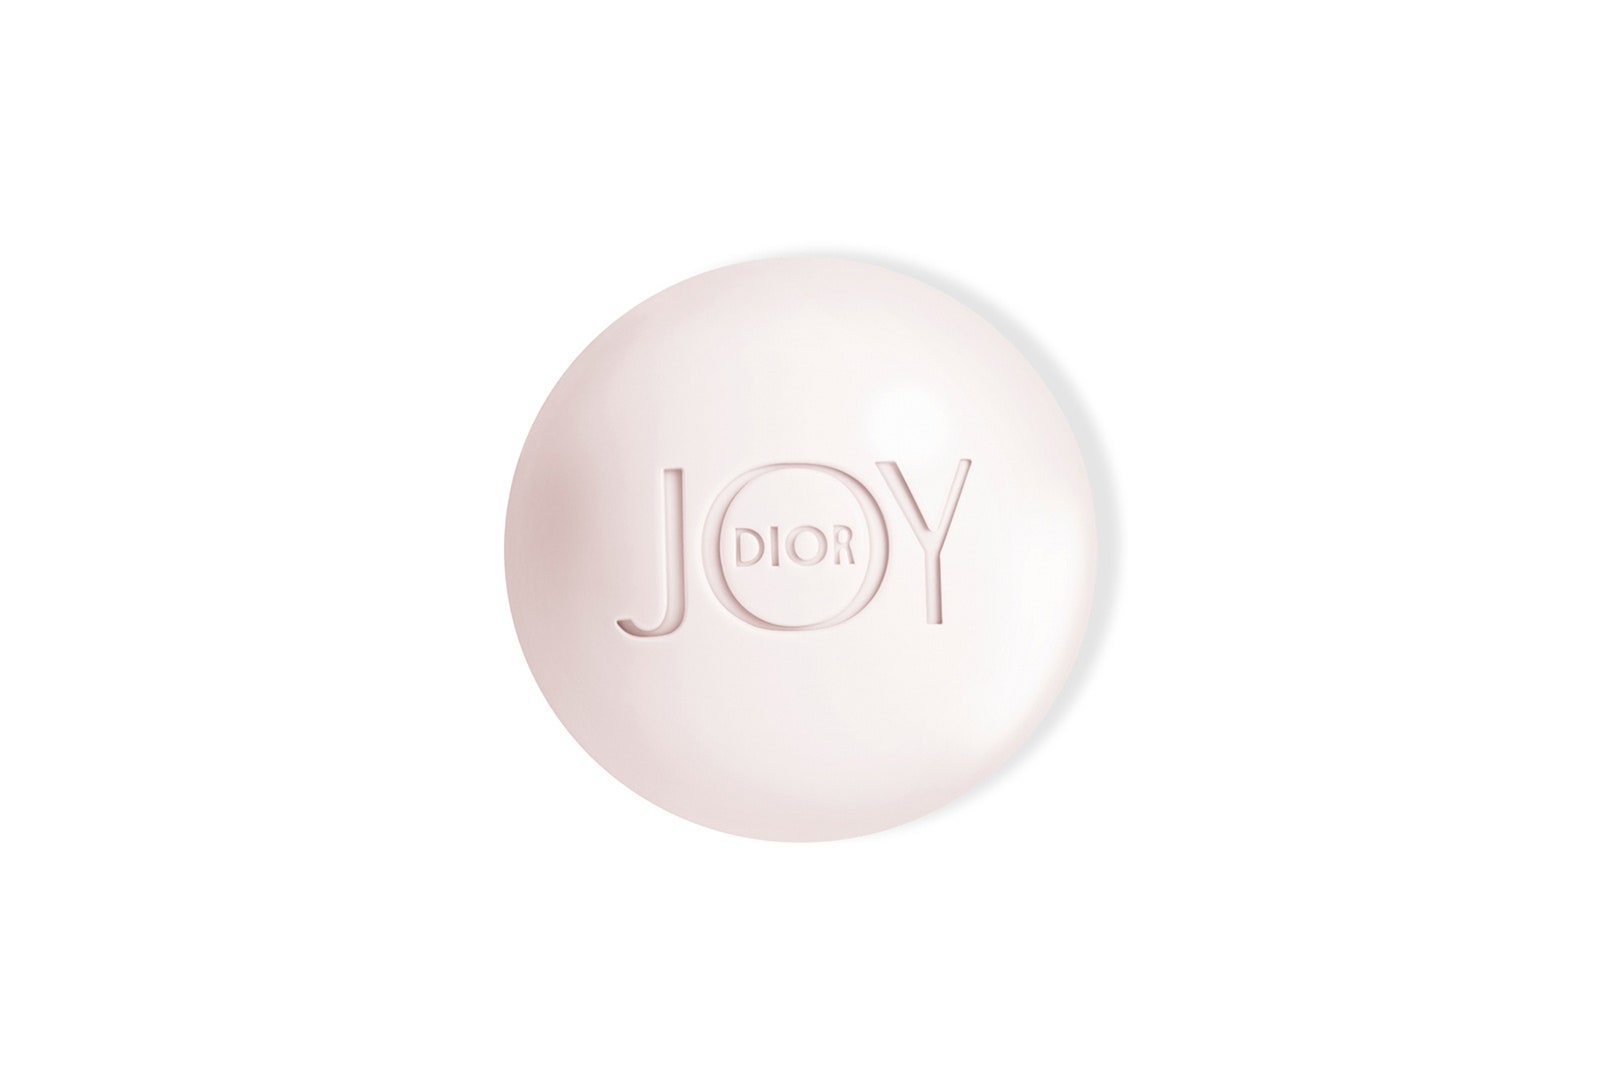 Перламутровое мыло Joy Intense Dior 2390 руб.